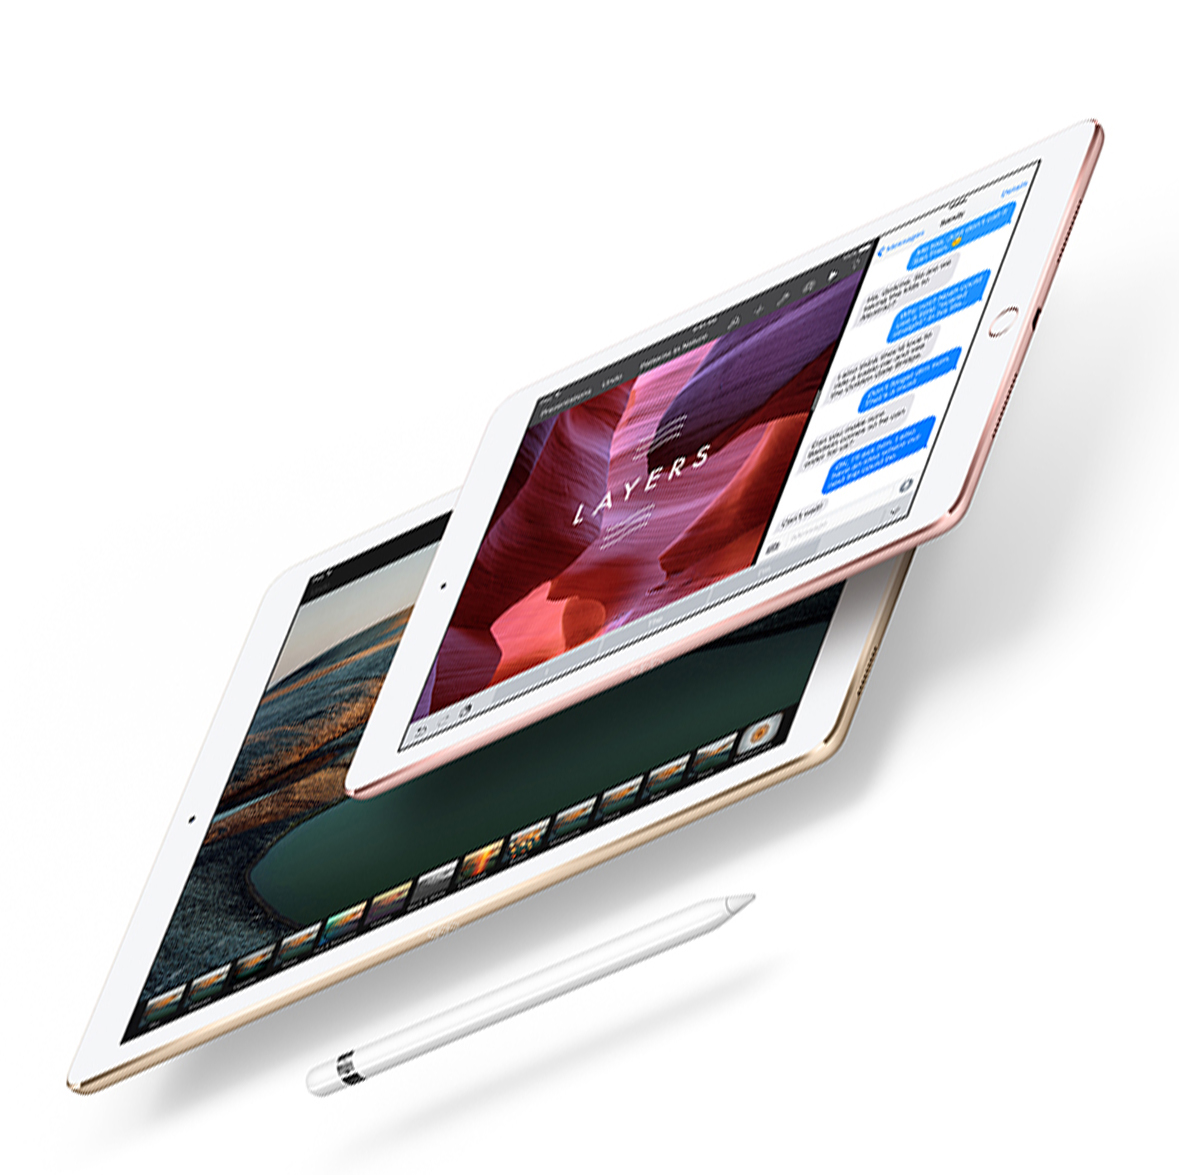 Apple iPad Pro 128GB iOS 9 12.9 Inch WiFi Model